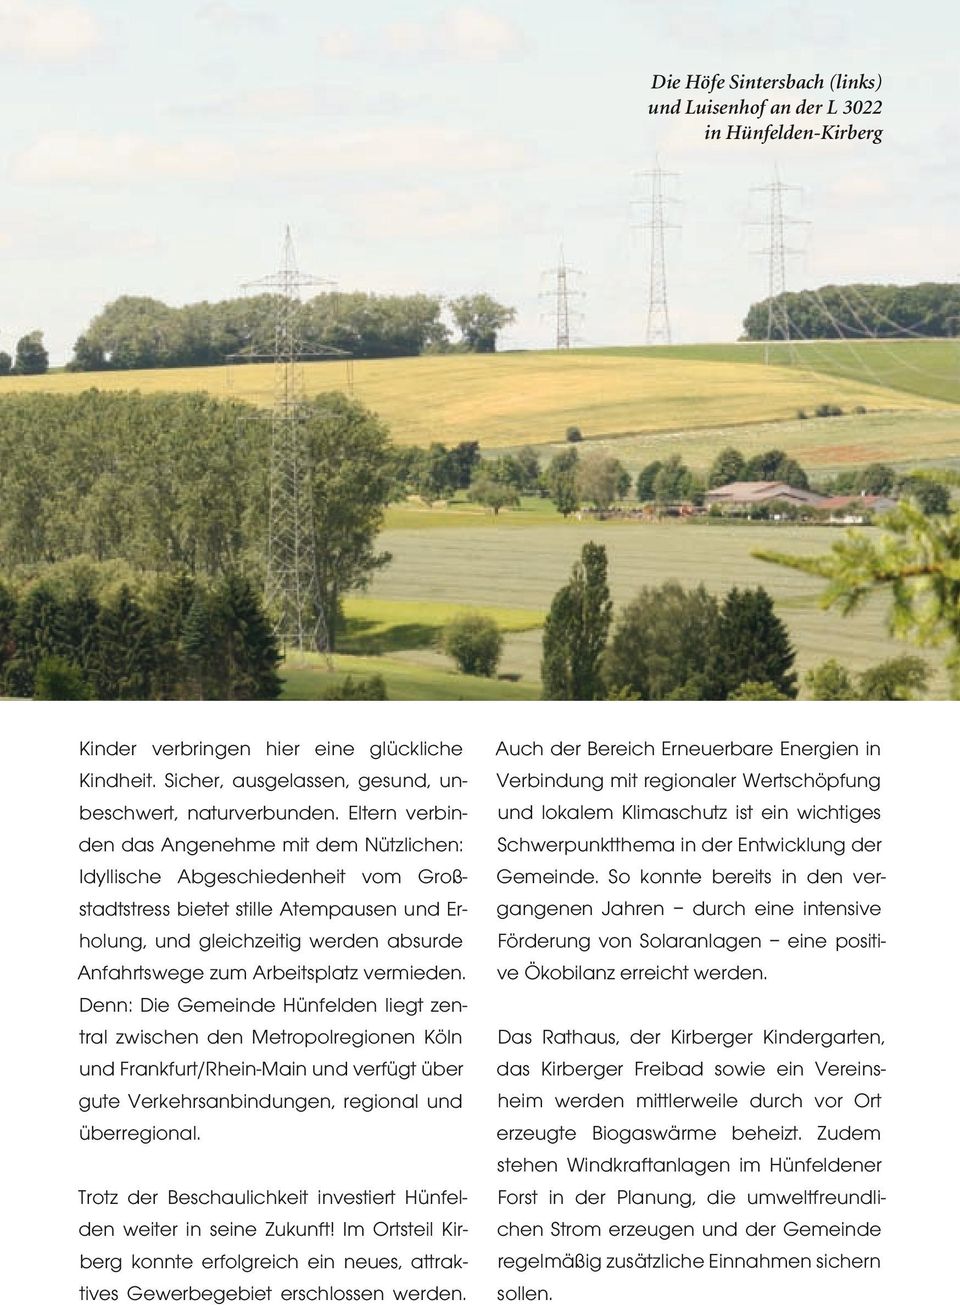 Arbeitsplatz vermieden. Denn: Die Gemeinde Hünfelden liegt zentral zwischen den Metropolregionen Köln und Frankfurt/Rhein-Main und verfügt über gute Verkehrsanbindungen, regional und überregional.